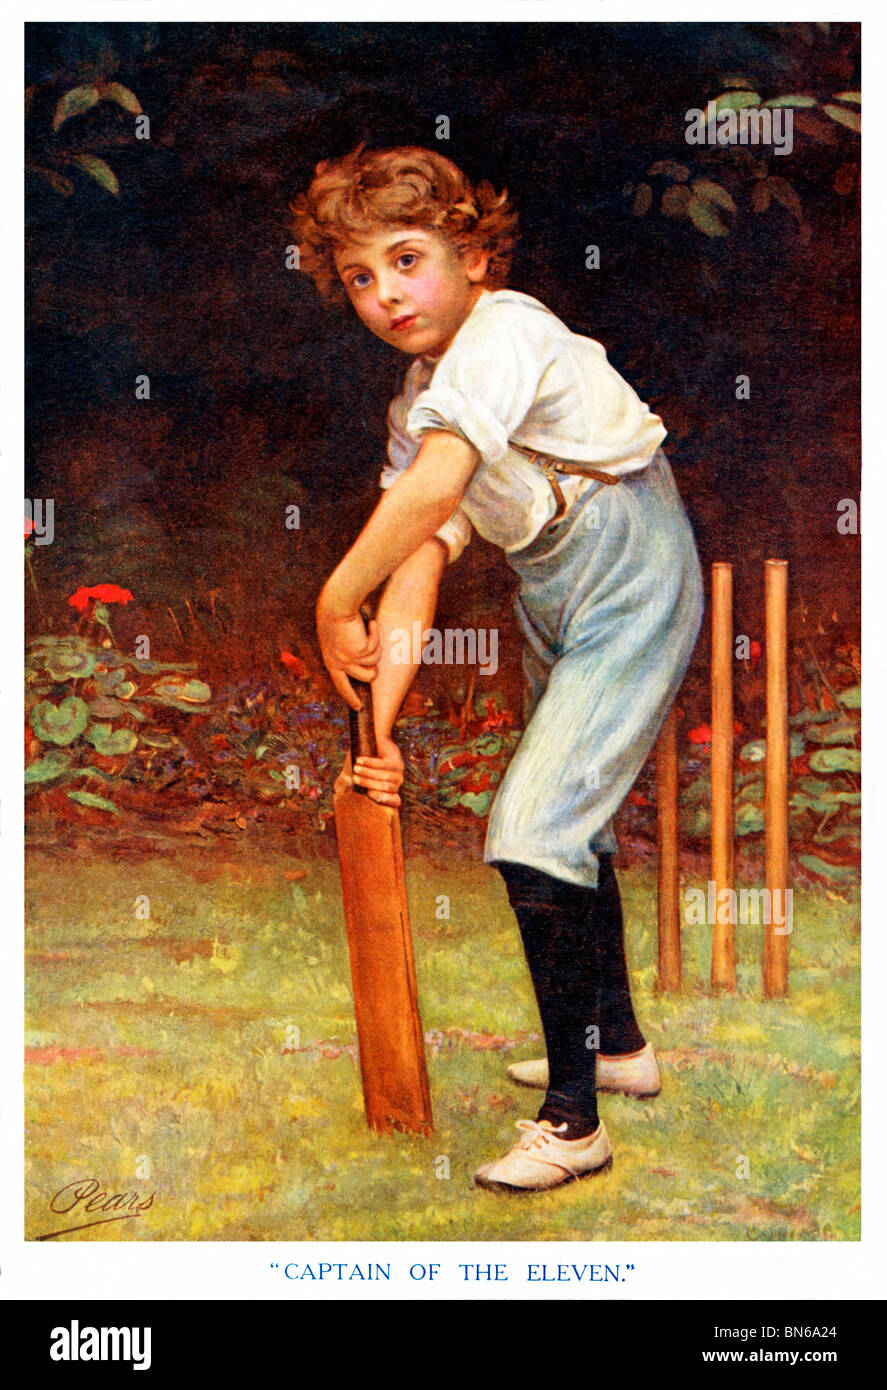 Le capitaine de l'onze, le célèbre tableau d'un cricketer par Philippe Calderon utilisé comme une publicité pour savon Pears Banque D'Images